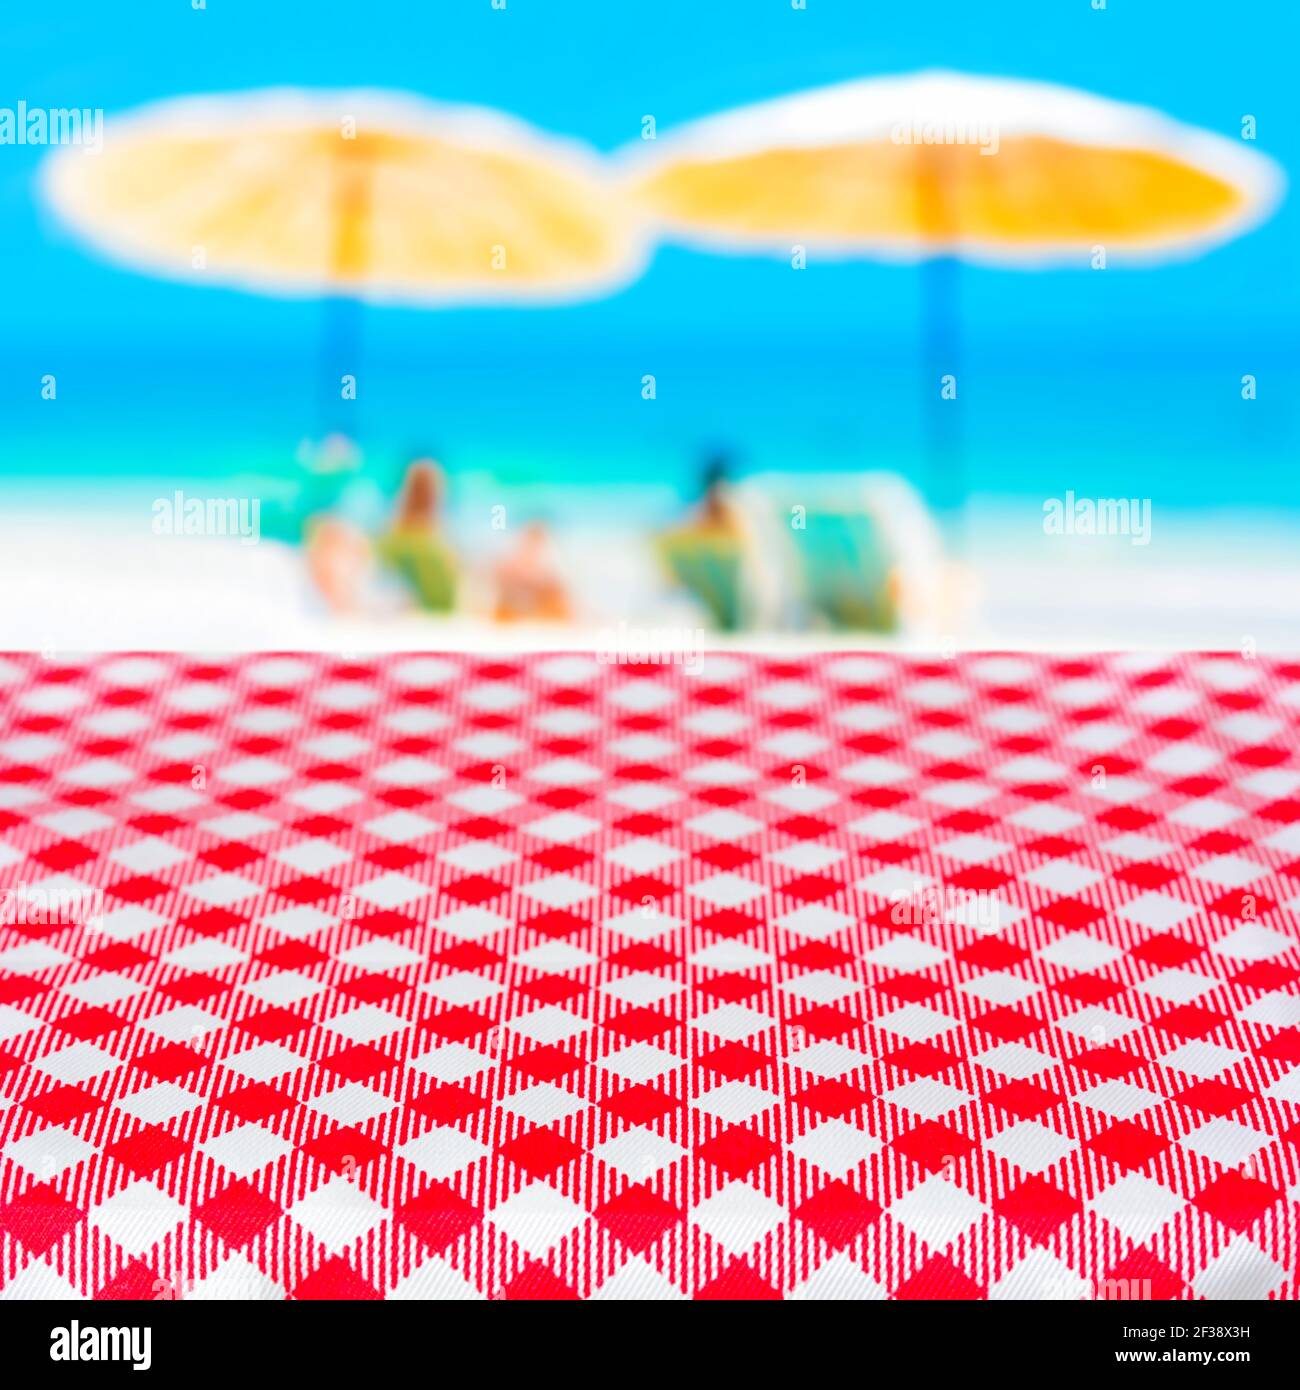 Rote karierte Tischdecke auf verschwommenem Strand Hintergrund, Sommerurlaub Strand Picknick-Konzept - kann für die Anzeige oder Montage Ihrer Produkte verwendet werden Stockfoto